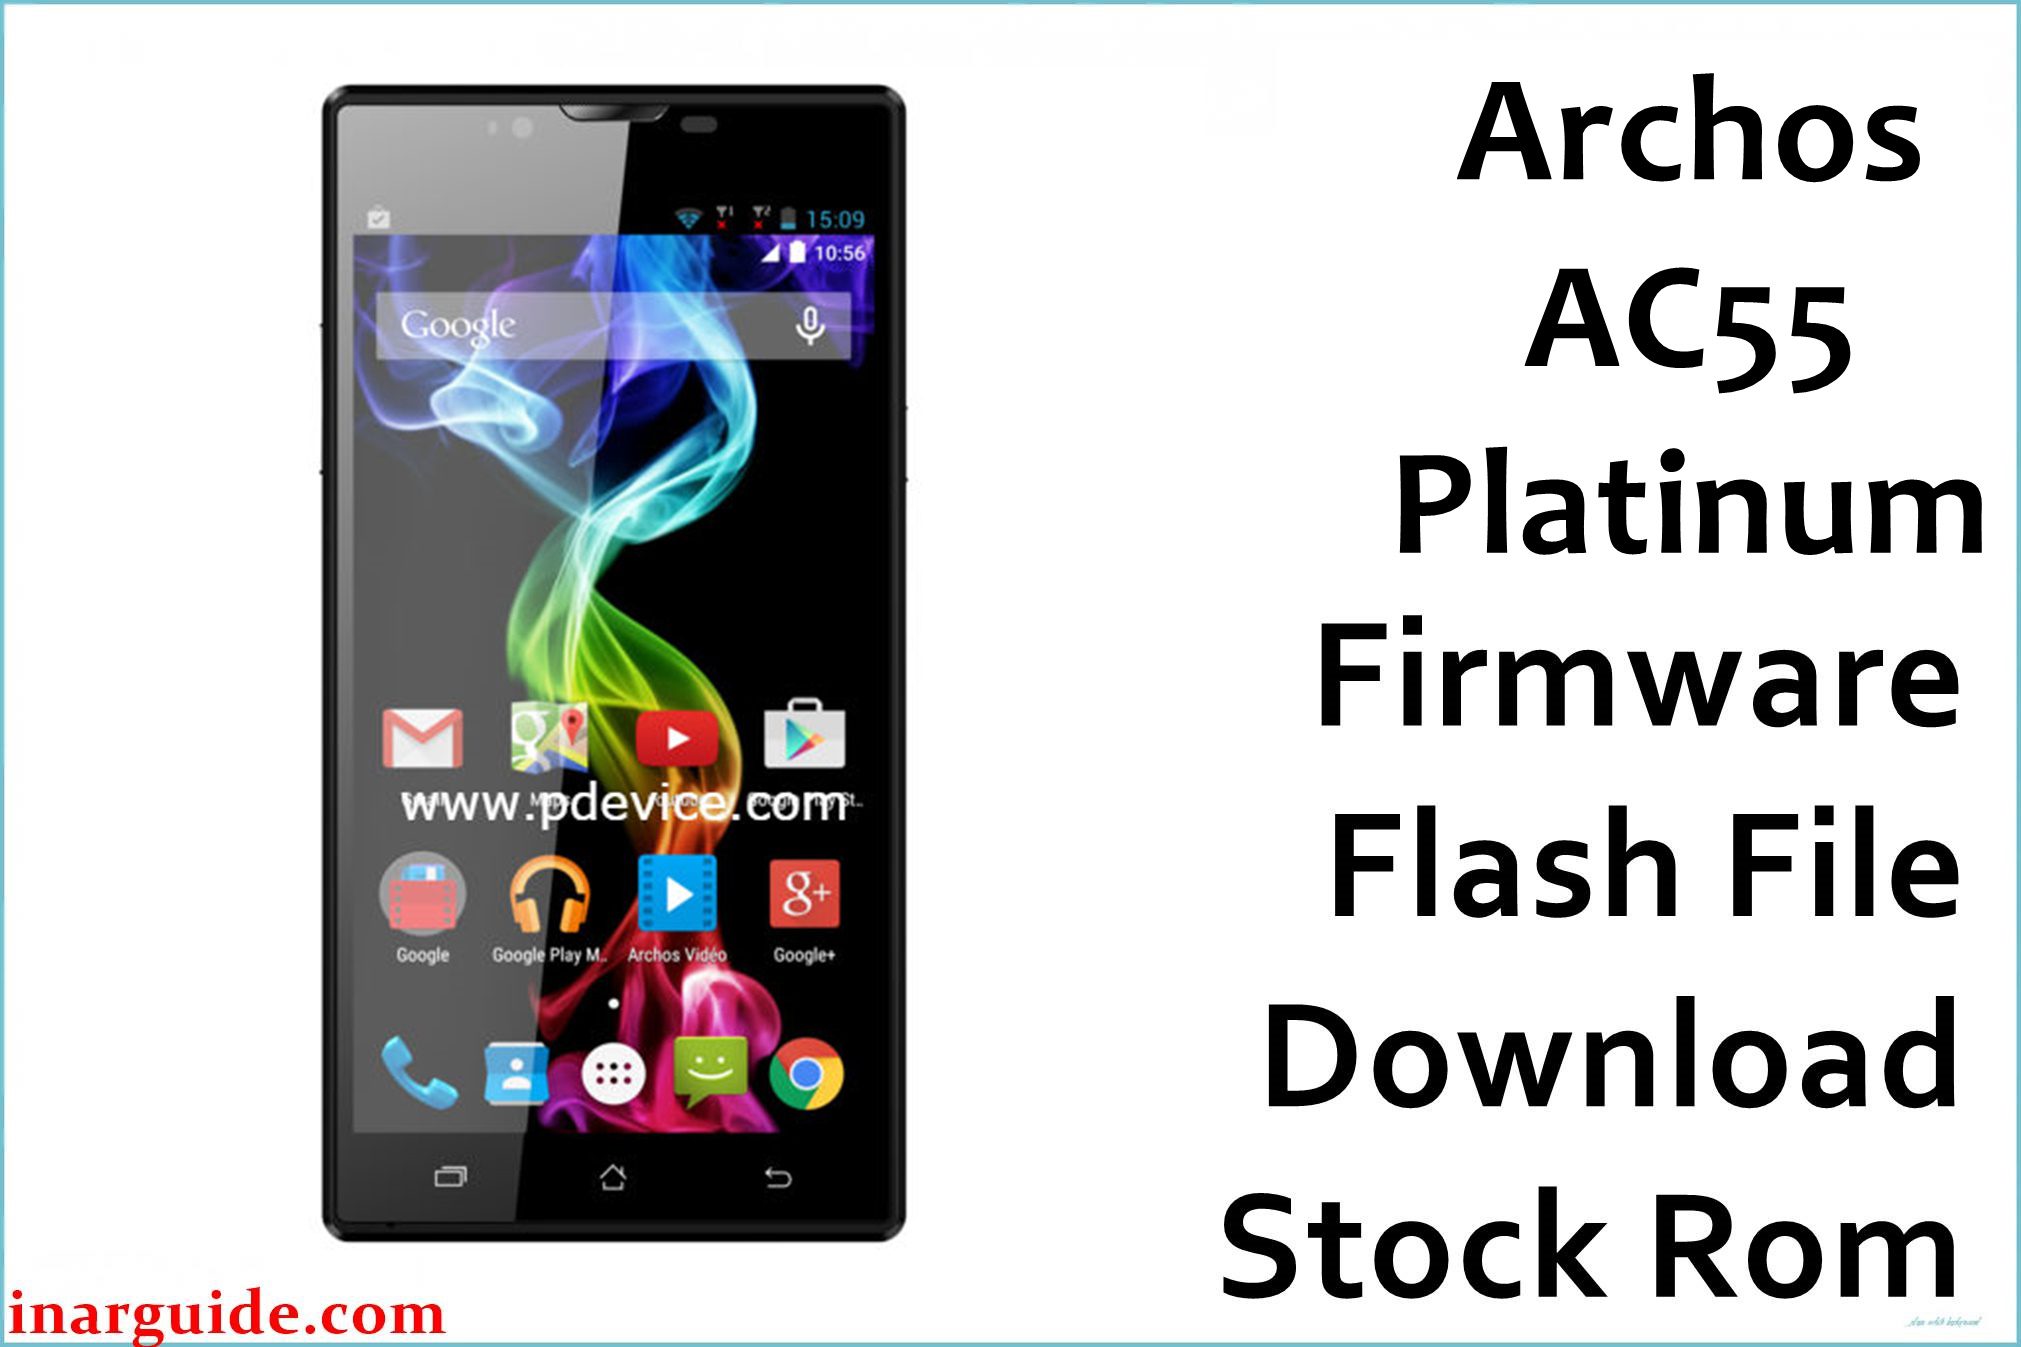 Archos AC55 Platinum